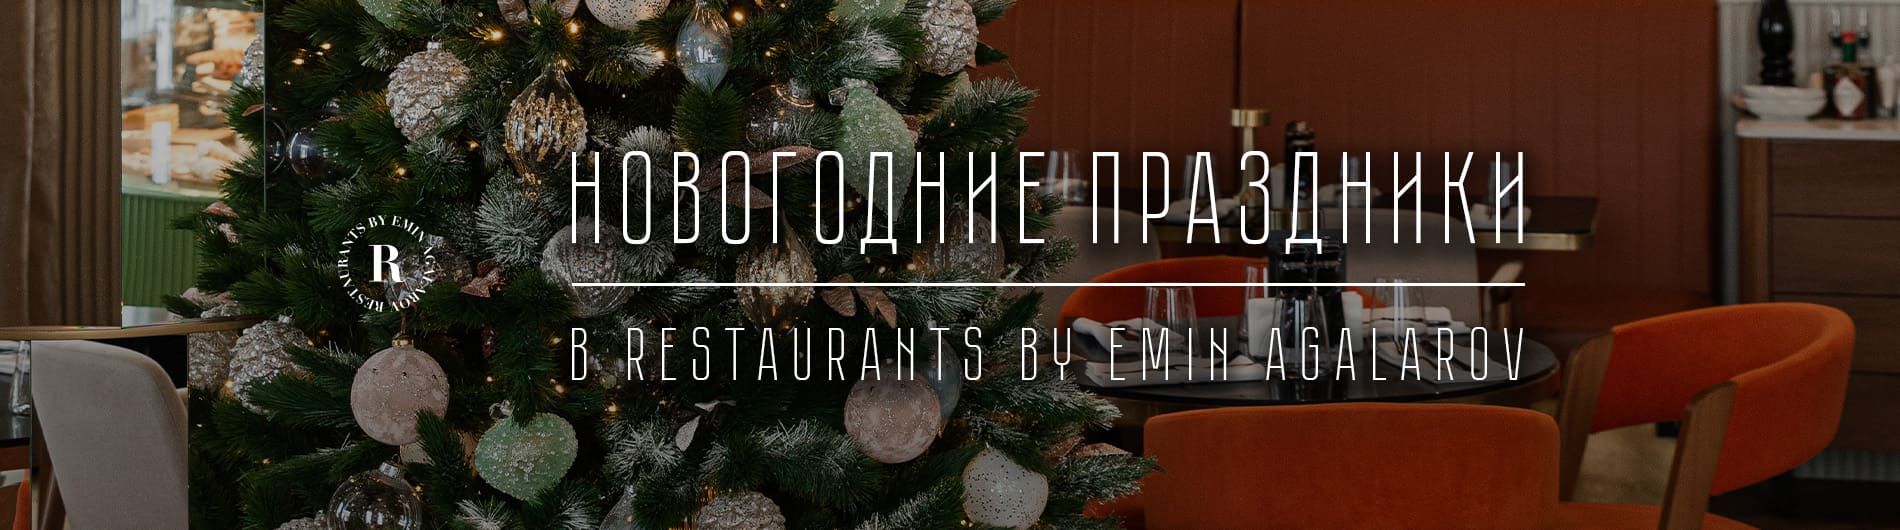 Зимние каникулы в Restaurants by Emin Agalarov